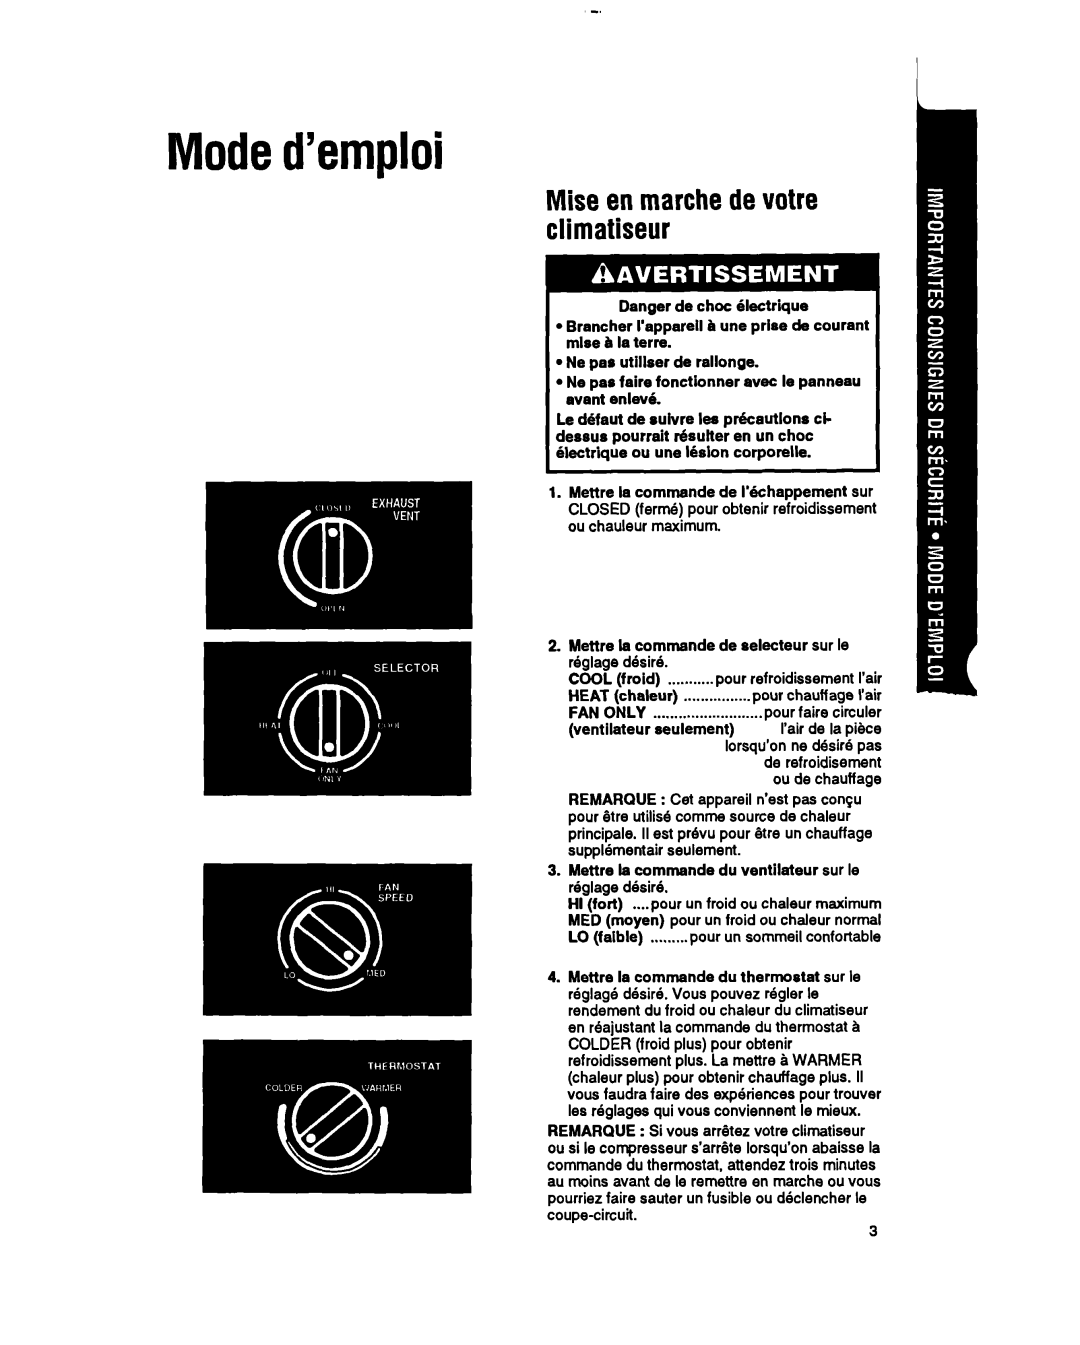 Whirlpool RH123A1 manual Moded’emploi, Mise en marchede votre climatiseur 